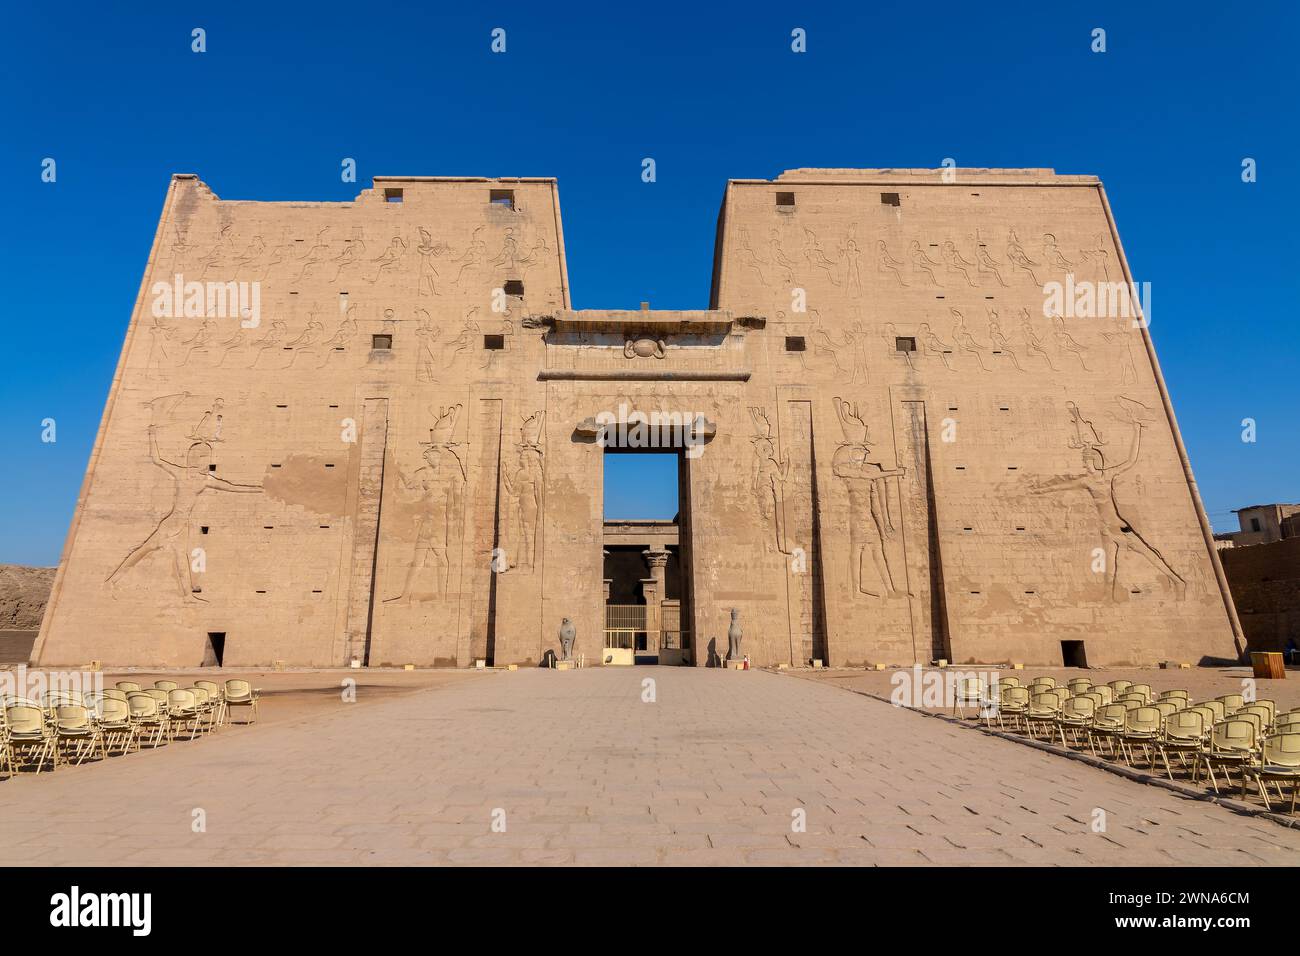 Entrada y fachada del antiguo templo egipcio de Edfu en la orilla oeste del río Nilo, Egipto Foto de stock